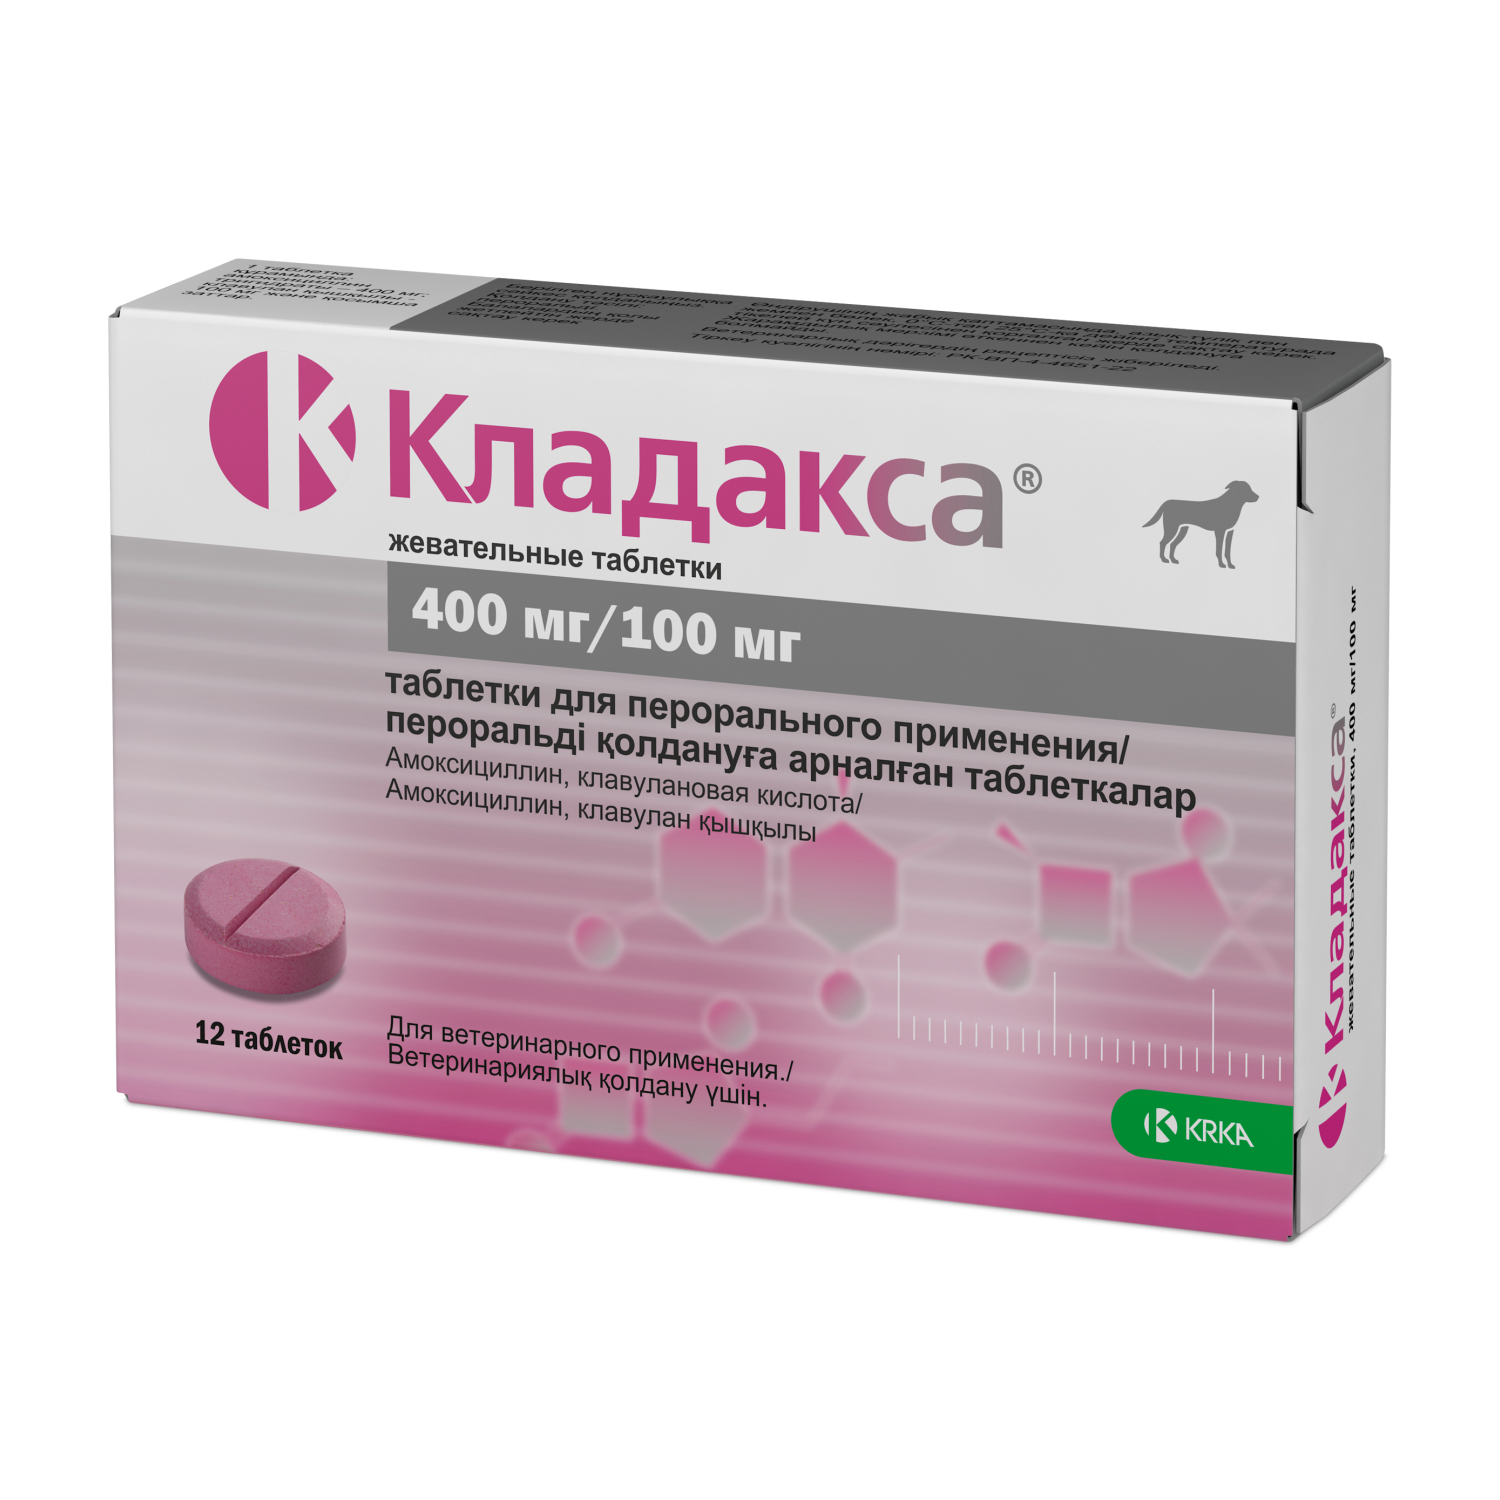 Препарат противовоспалительный для собак KRKA Кладакса 400мг/100мг 12таблеток - фото 1